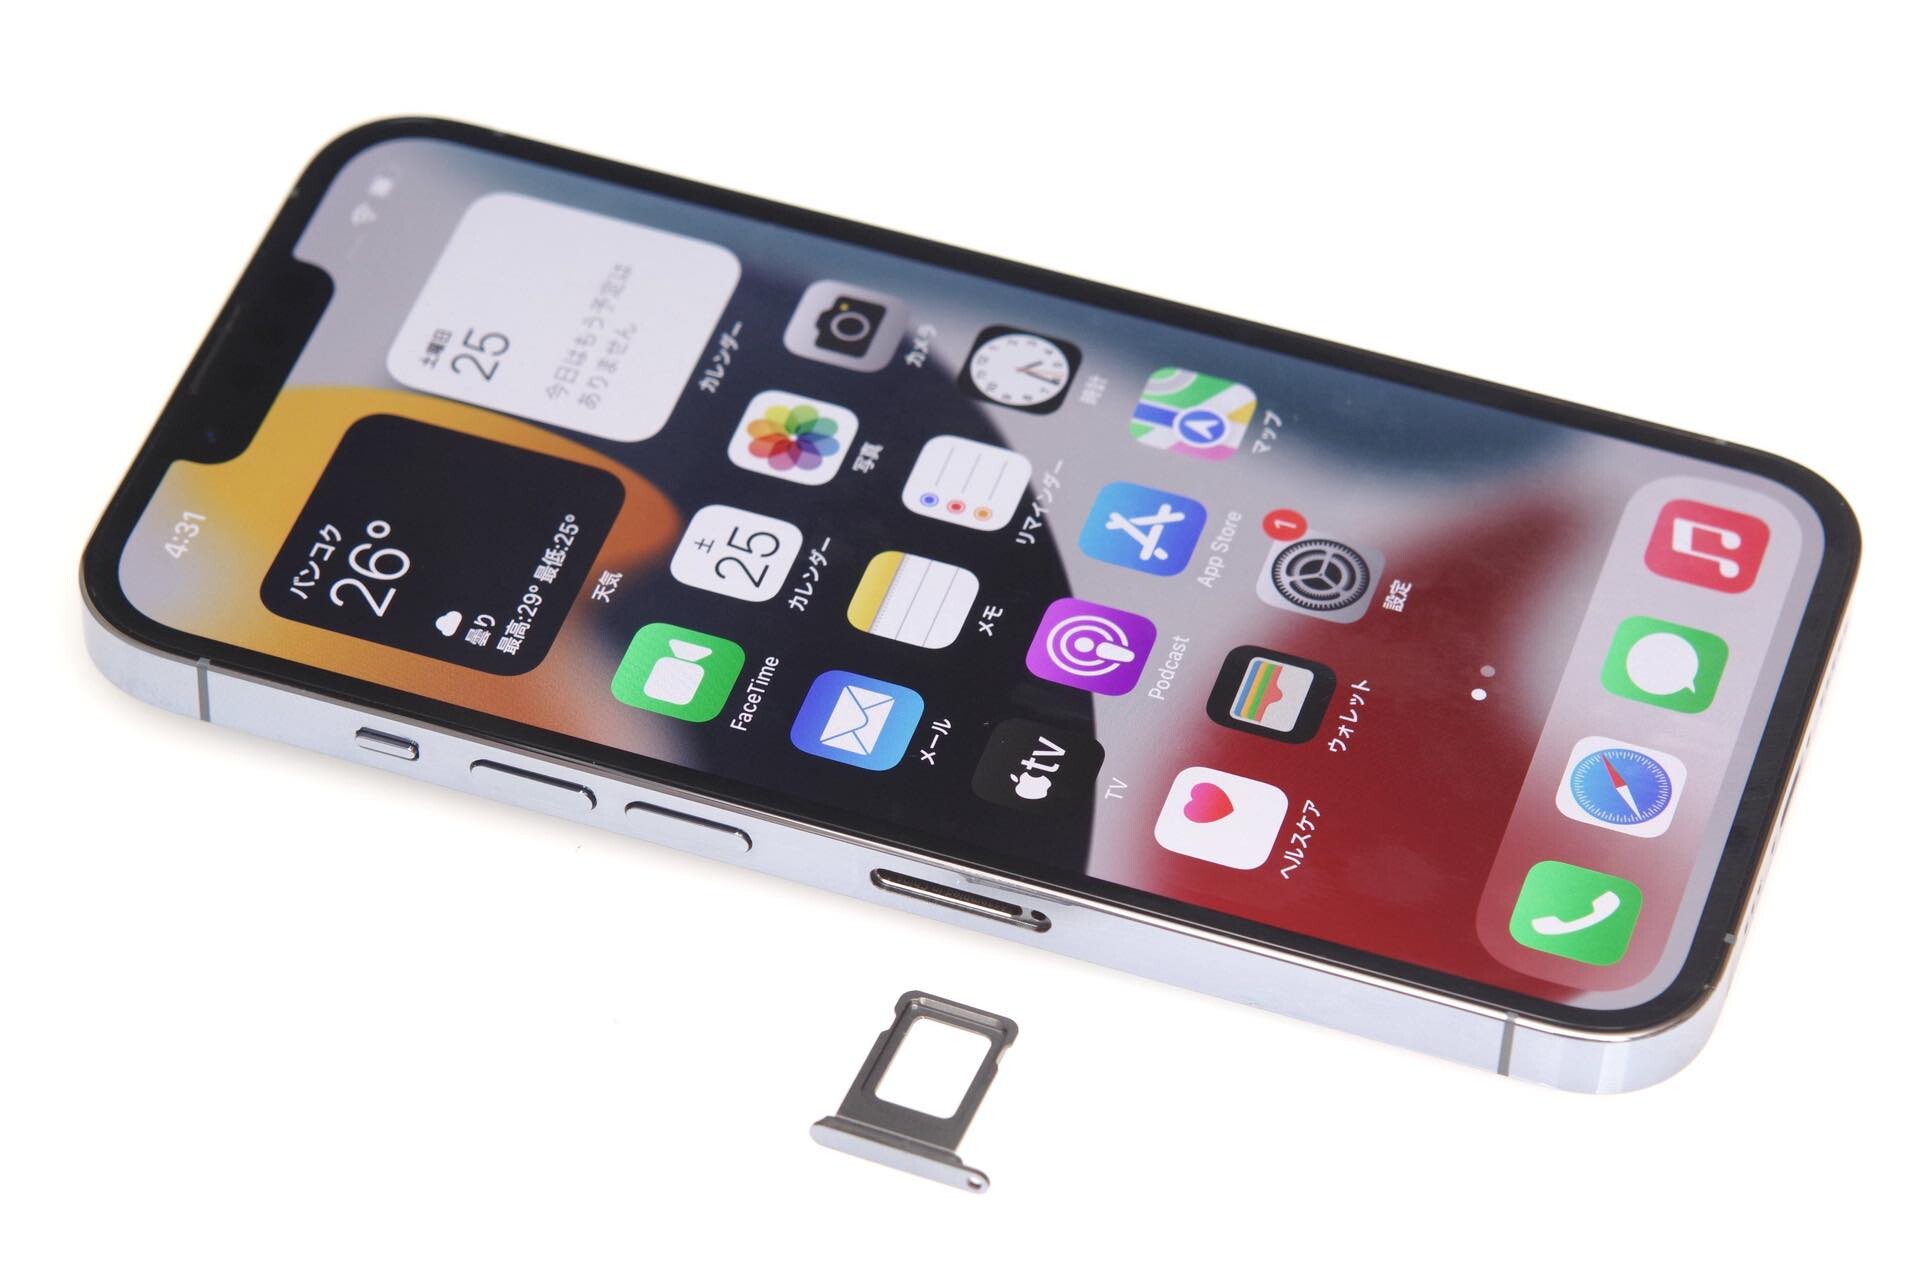 Appleの新型スマホ「iPhone 13 Pro」の新色シエラブルーを購入！開封して外観やパッケージを写真で紹介。iPhone 12 Pro